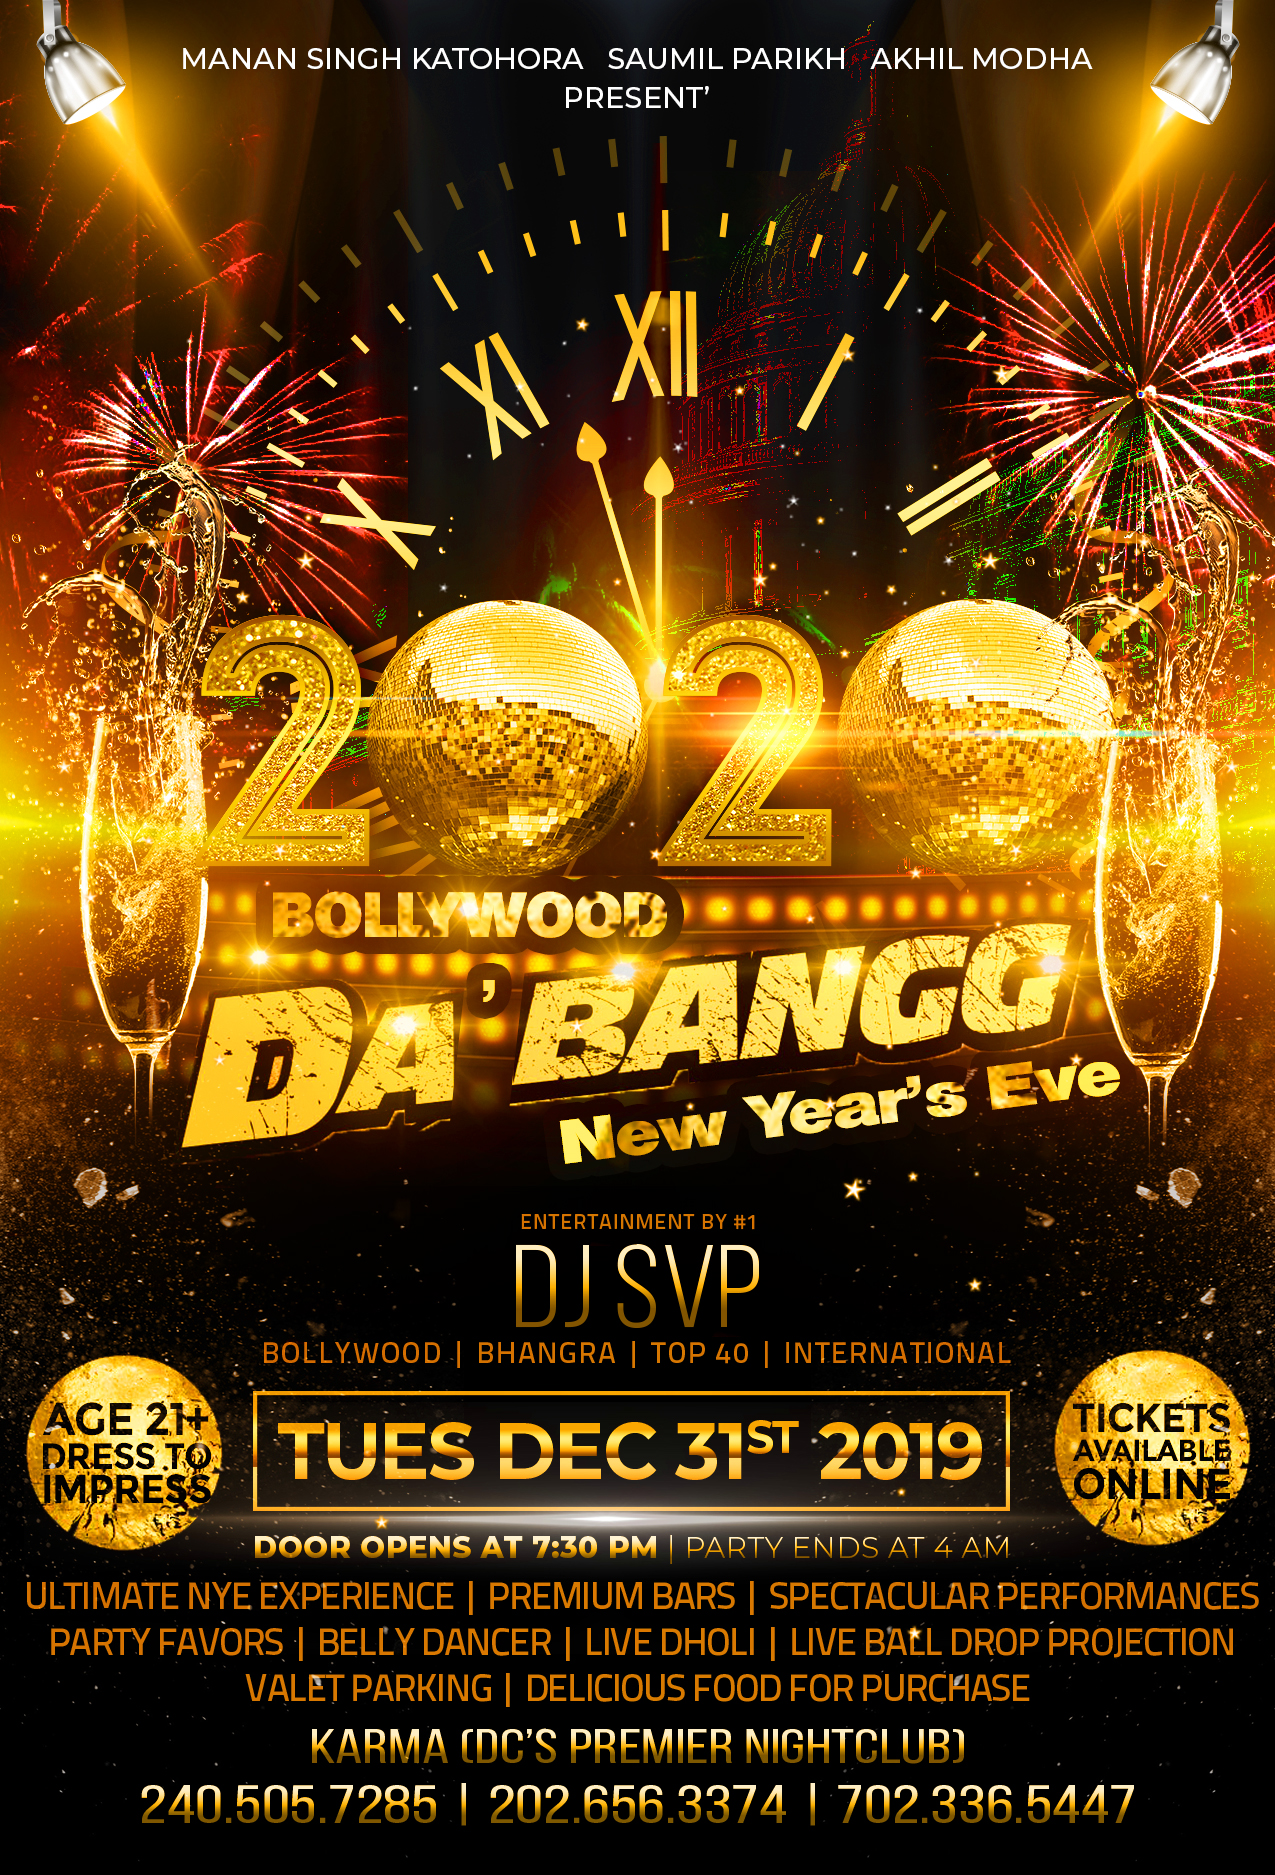 Bollywood DA' BANGG - New Year's Eve 2020